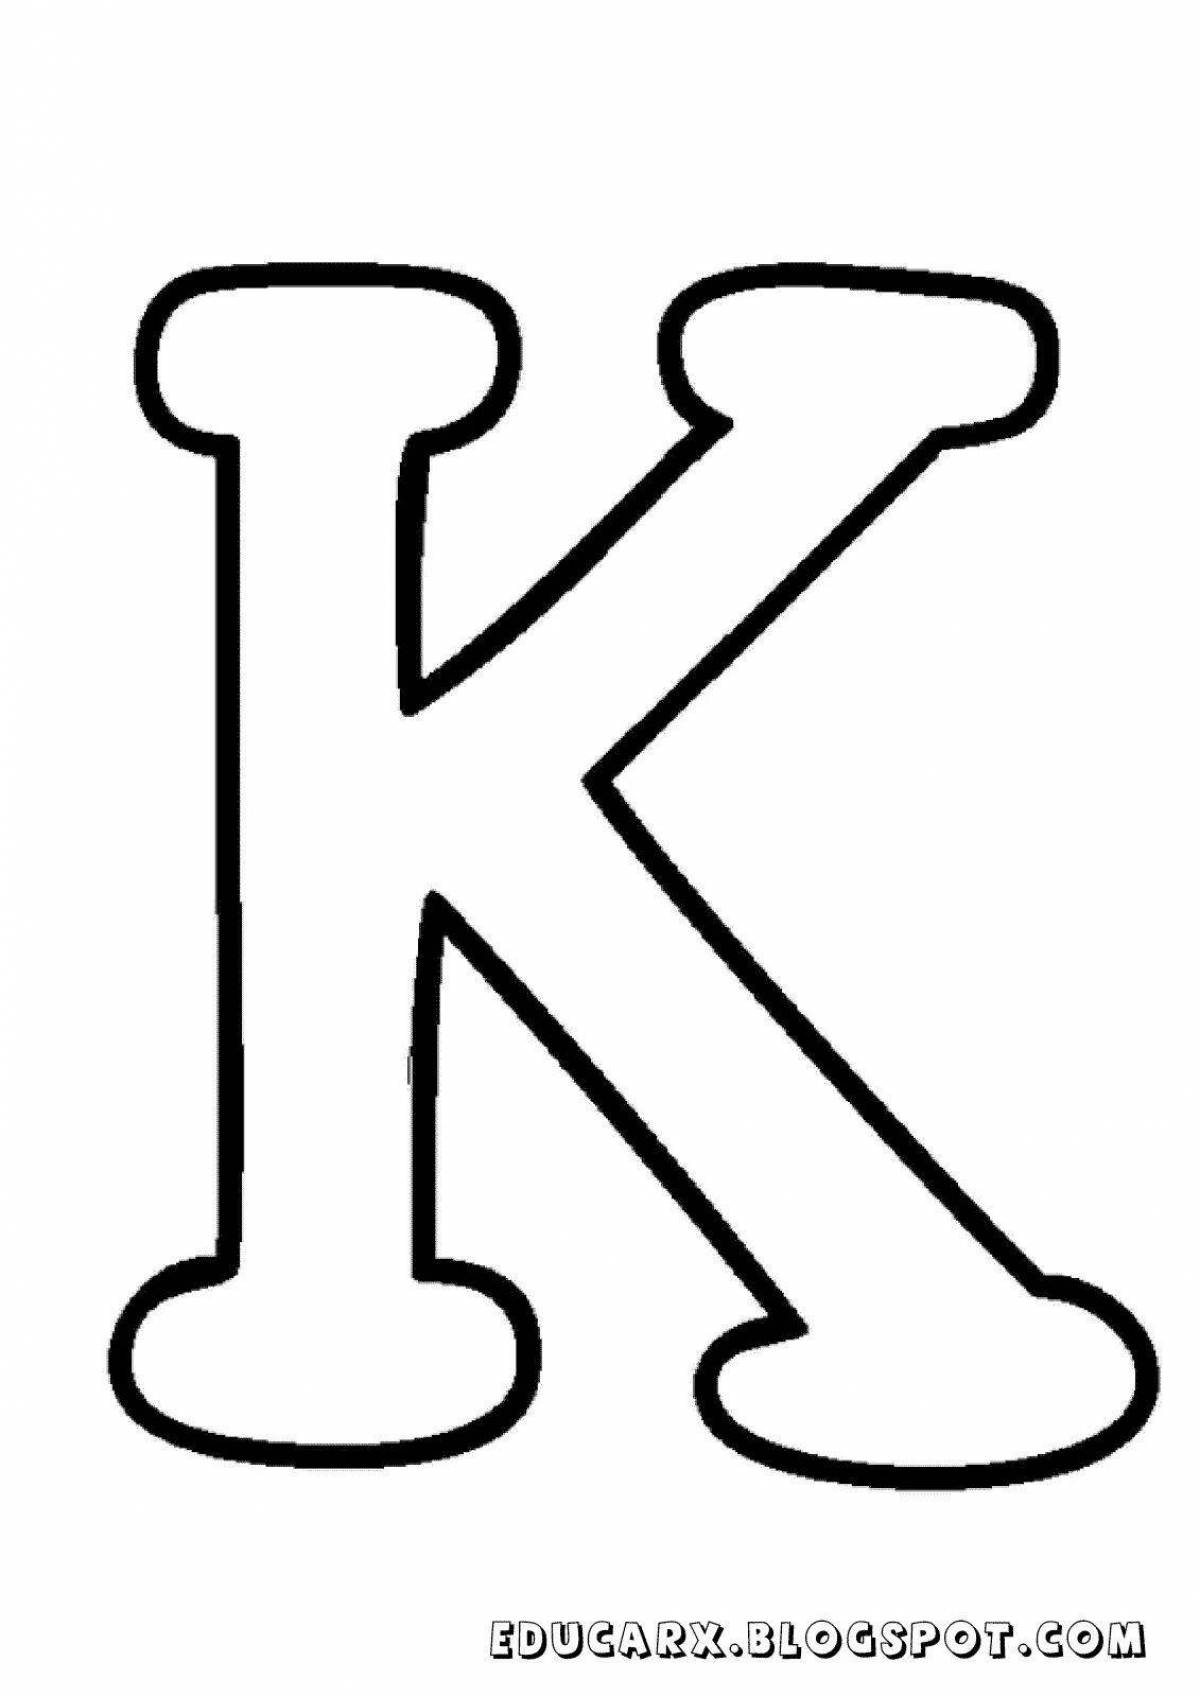 Раскраска яркая буква k